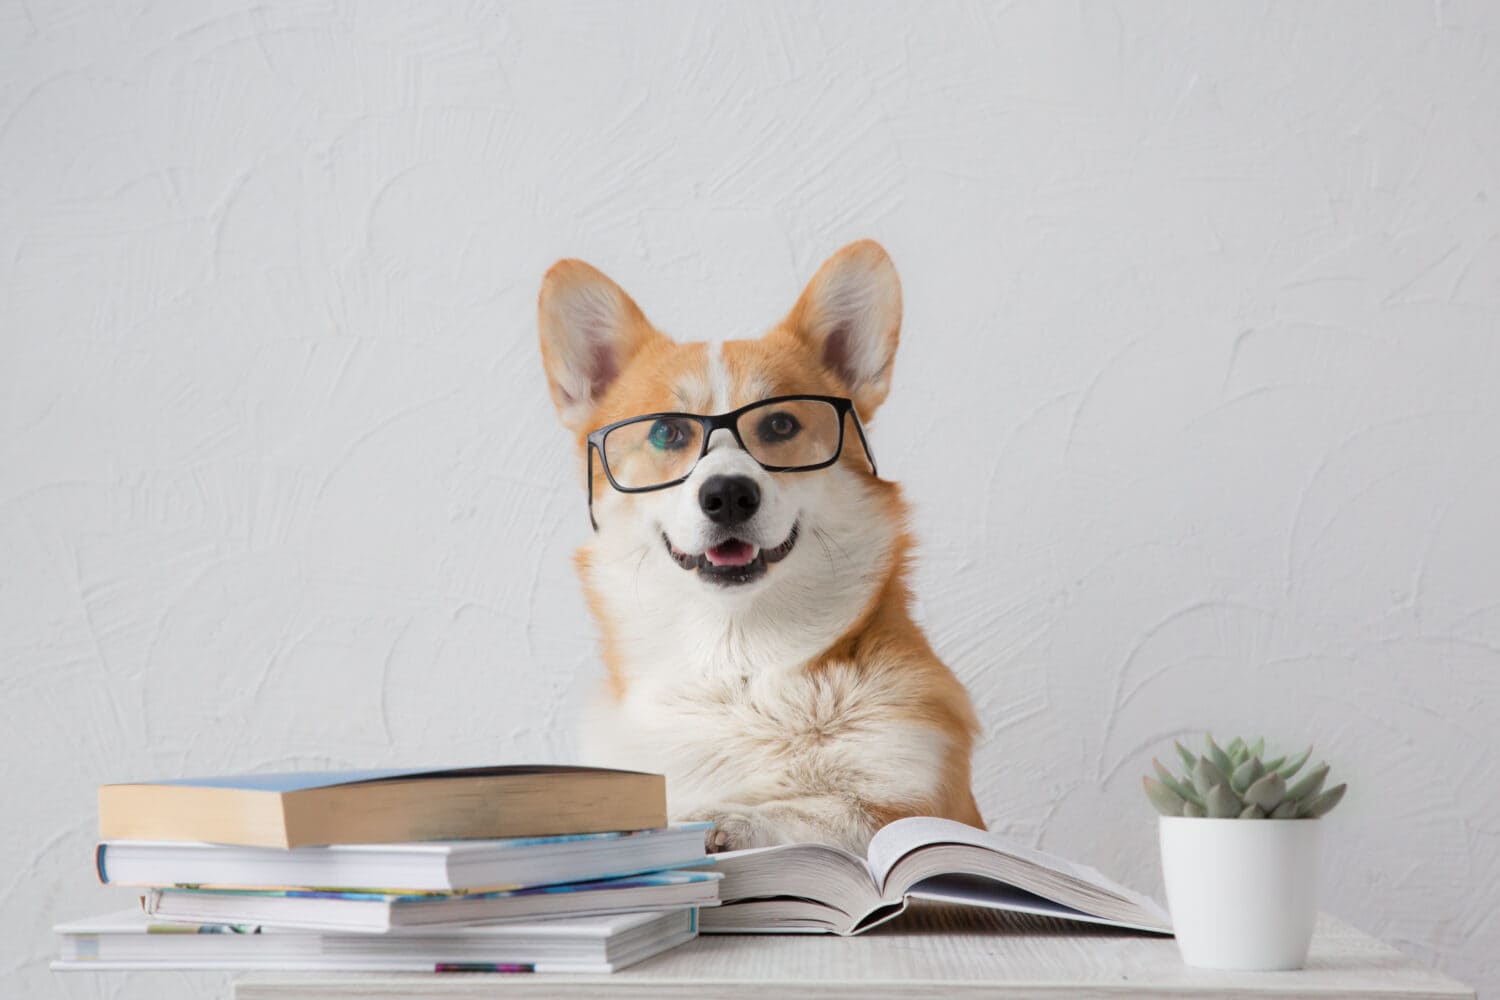 Cane corgi intelligente e divertente con gli occhiali seduto con i libri, che legge e studia sorridente su sfondo bianco